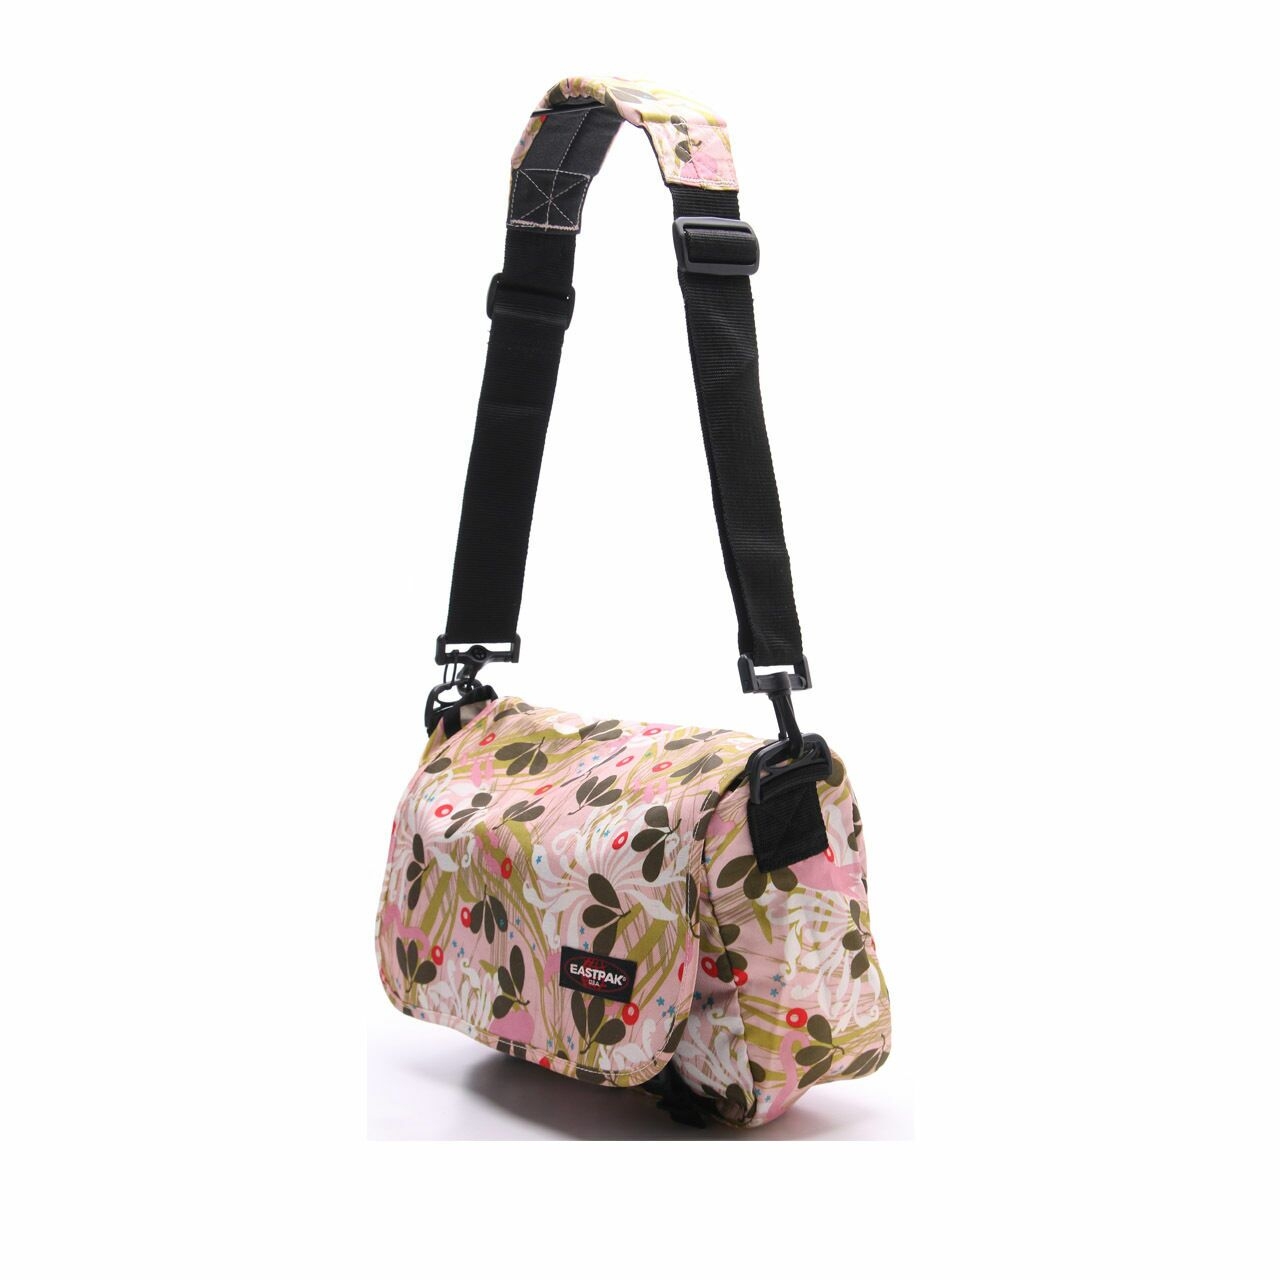 Eastpak Multicolor Floral Sling Bag